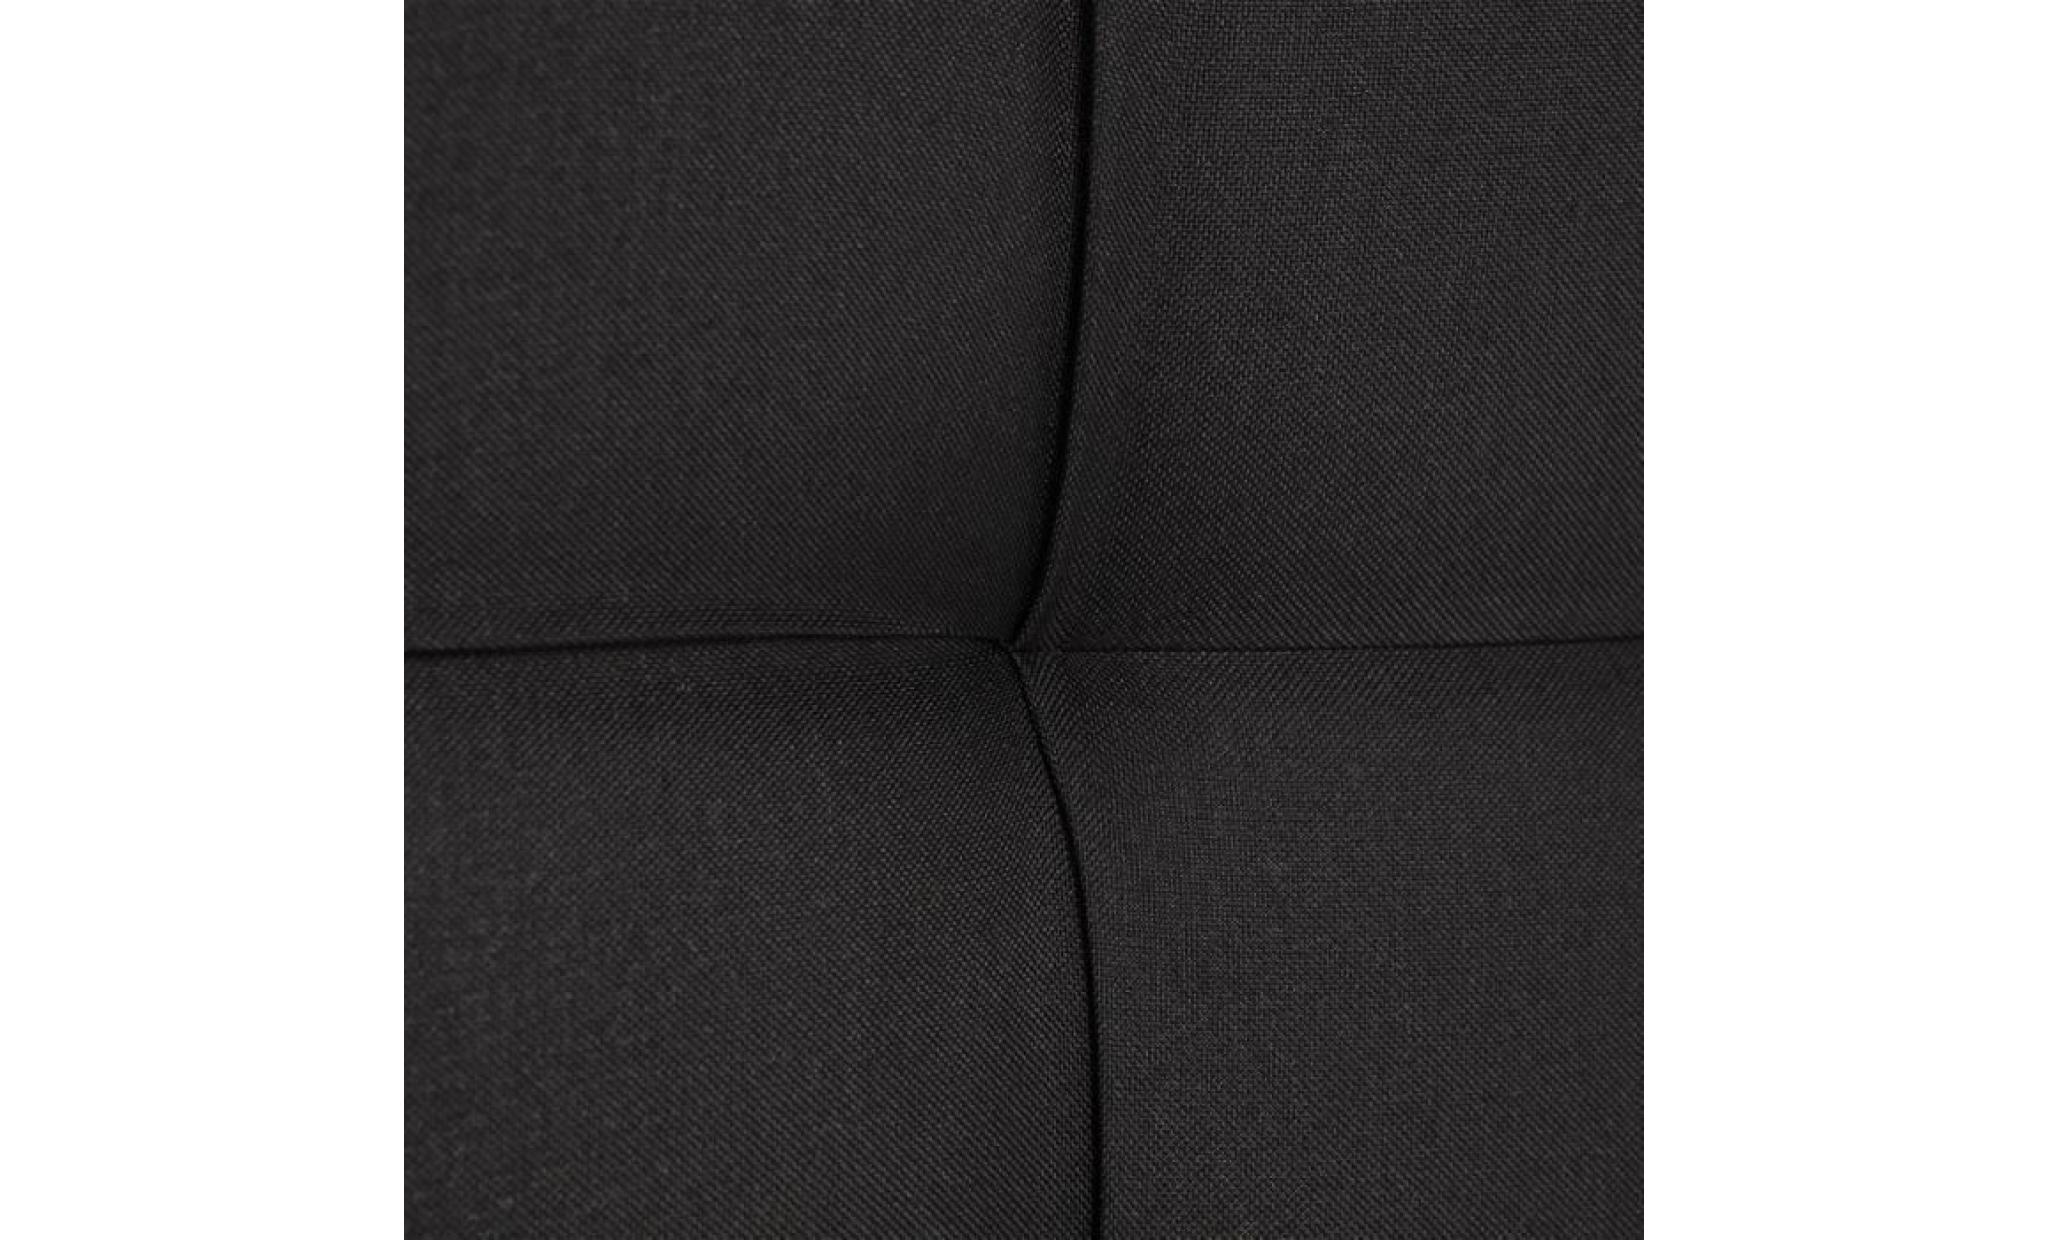 finlandek tête de lit armance classique   tissu noir   l 140 cm pas cher